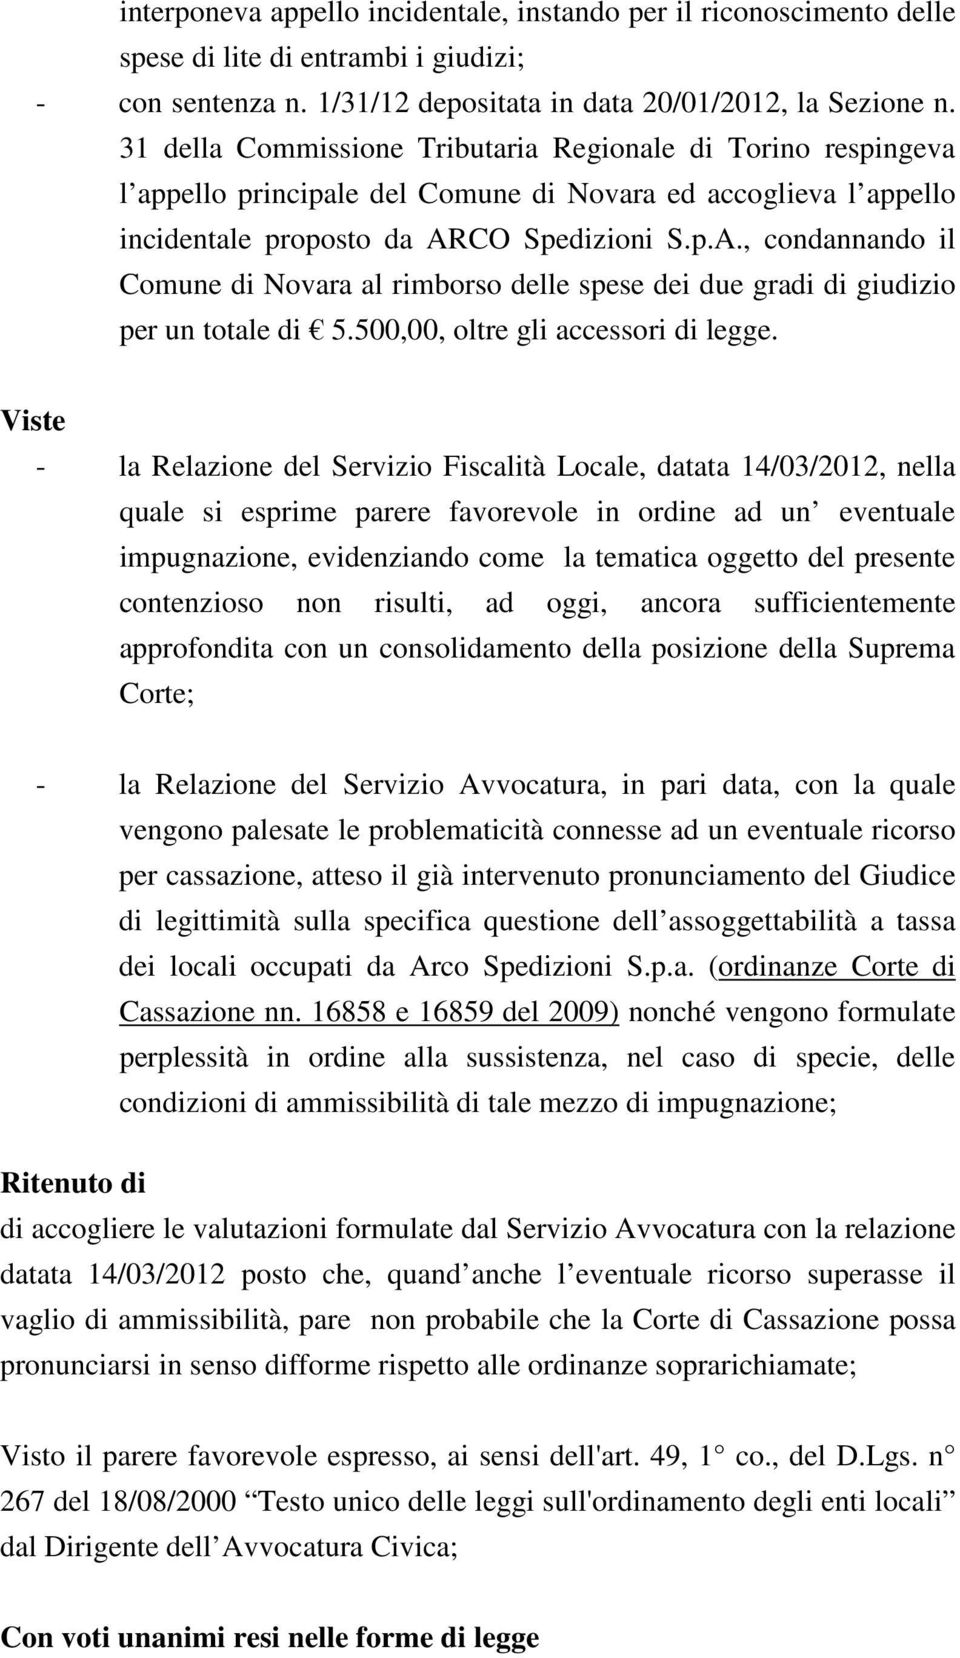 CO Spedizioni S.p.A., condannando il Comune di Novara al rimborso delle spese dei due gradi di giudizio per un totale di 5.500,00, oltre gli accessori di legge.